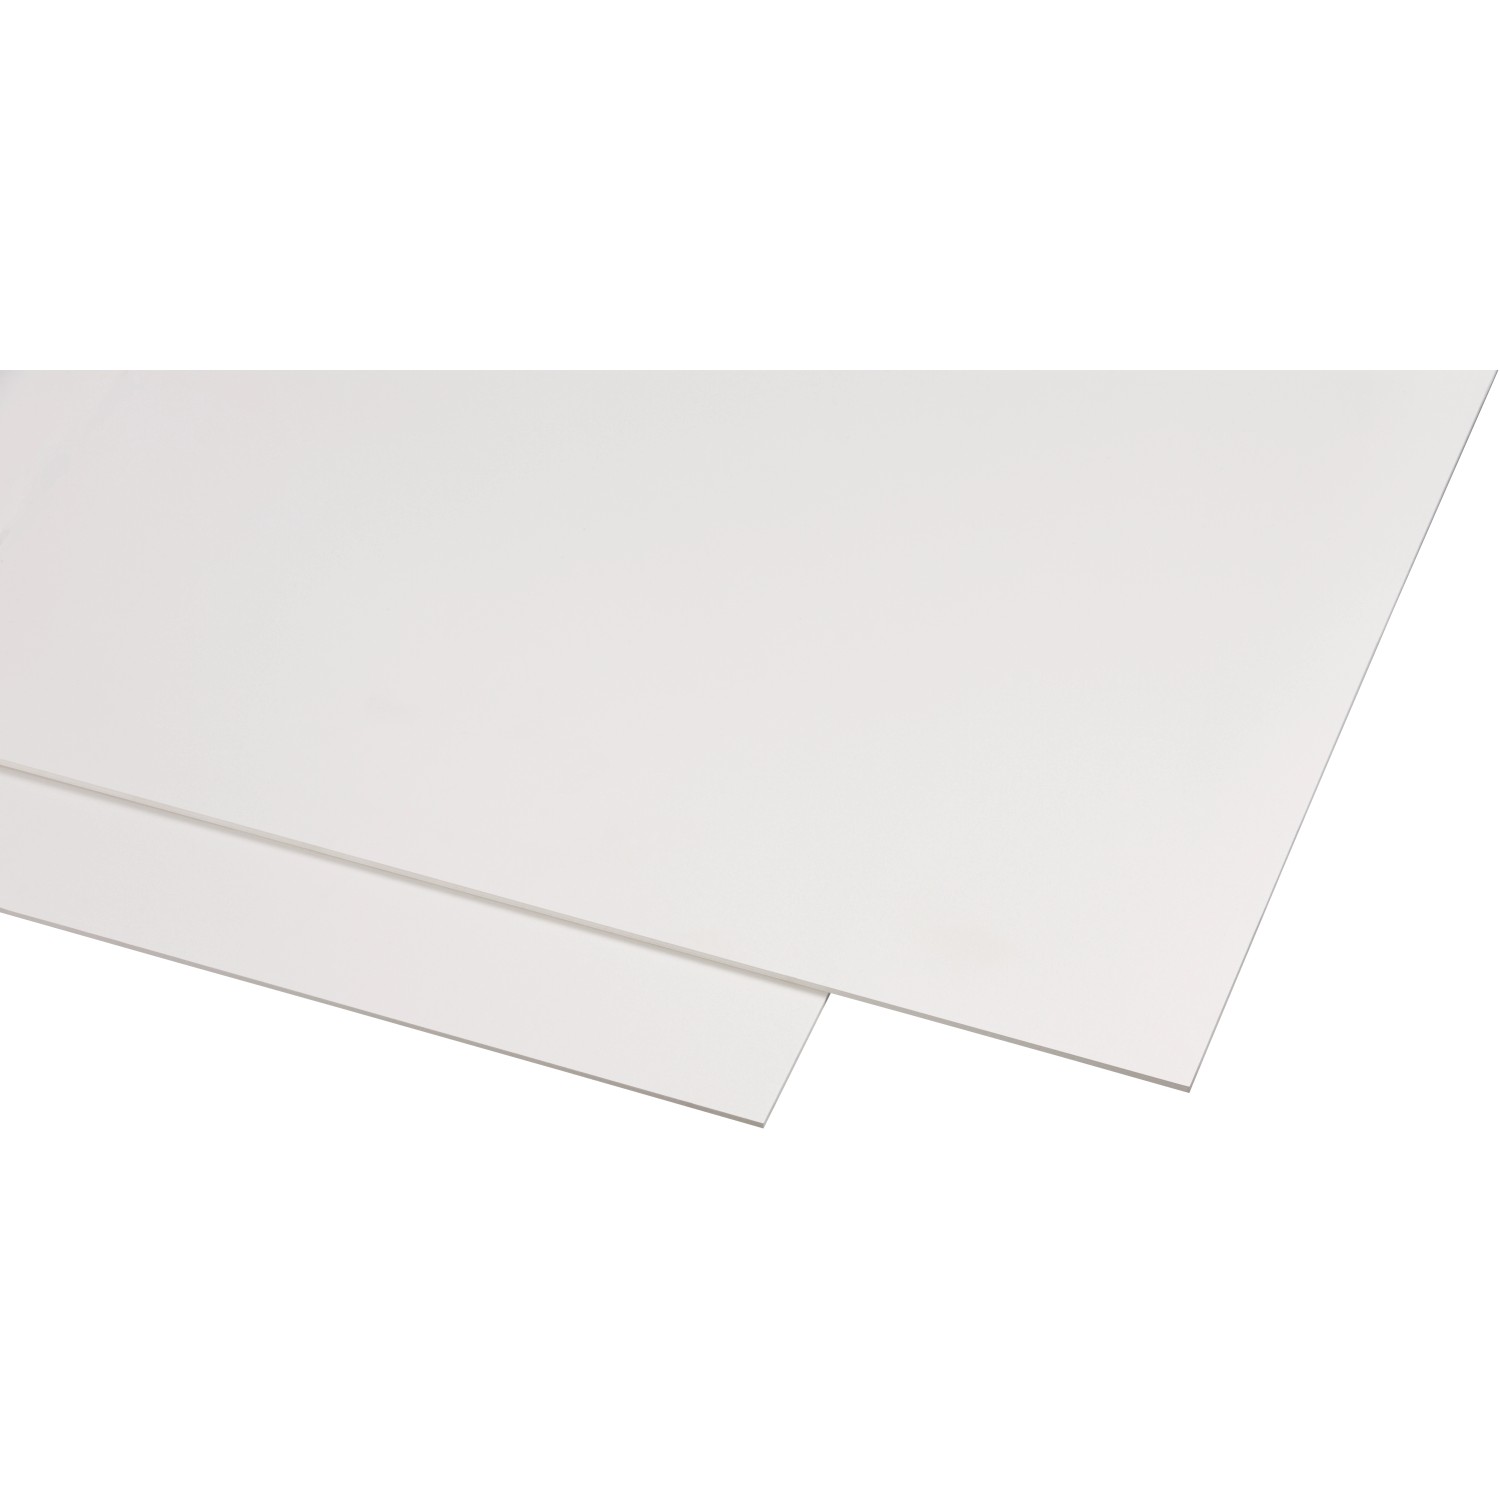 Kunststoffplatte Guttagliss Hobbycolor Weiß 50 cm x 25 cm kaufen